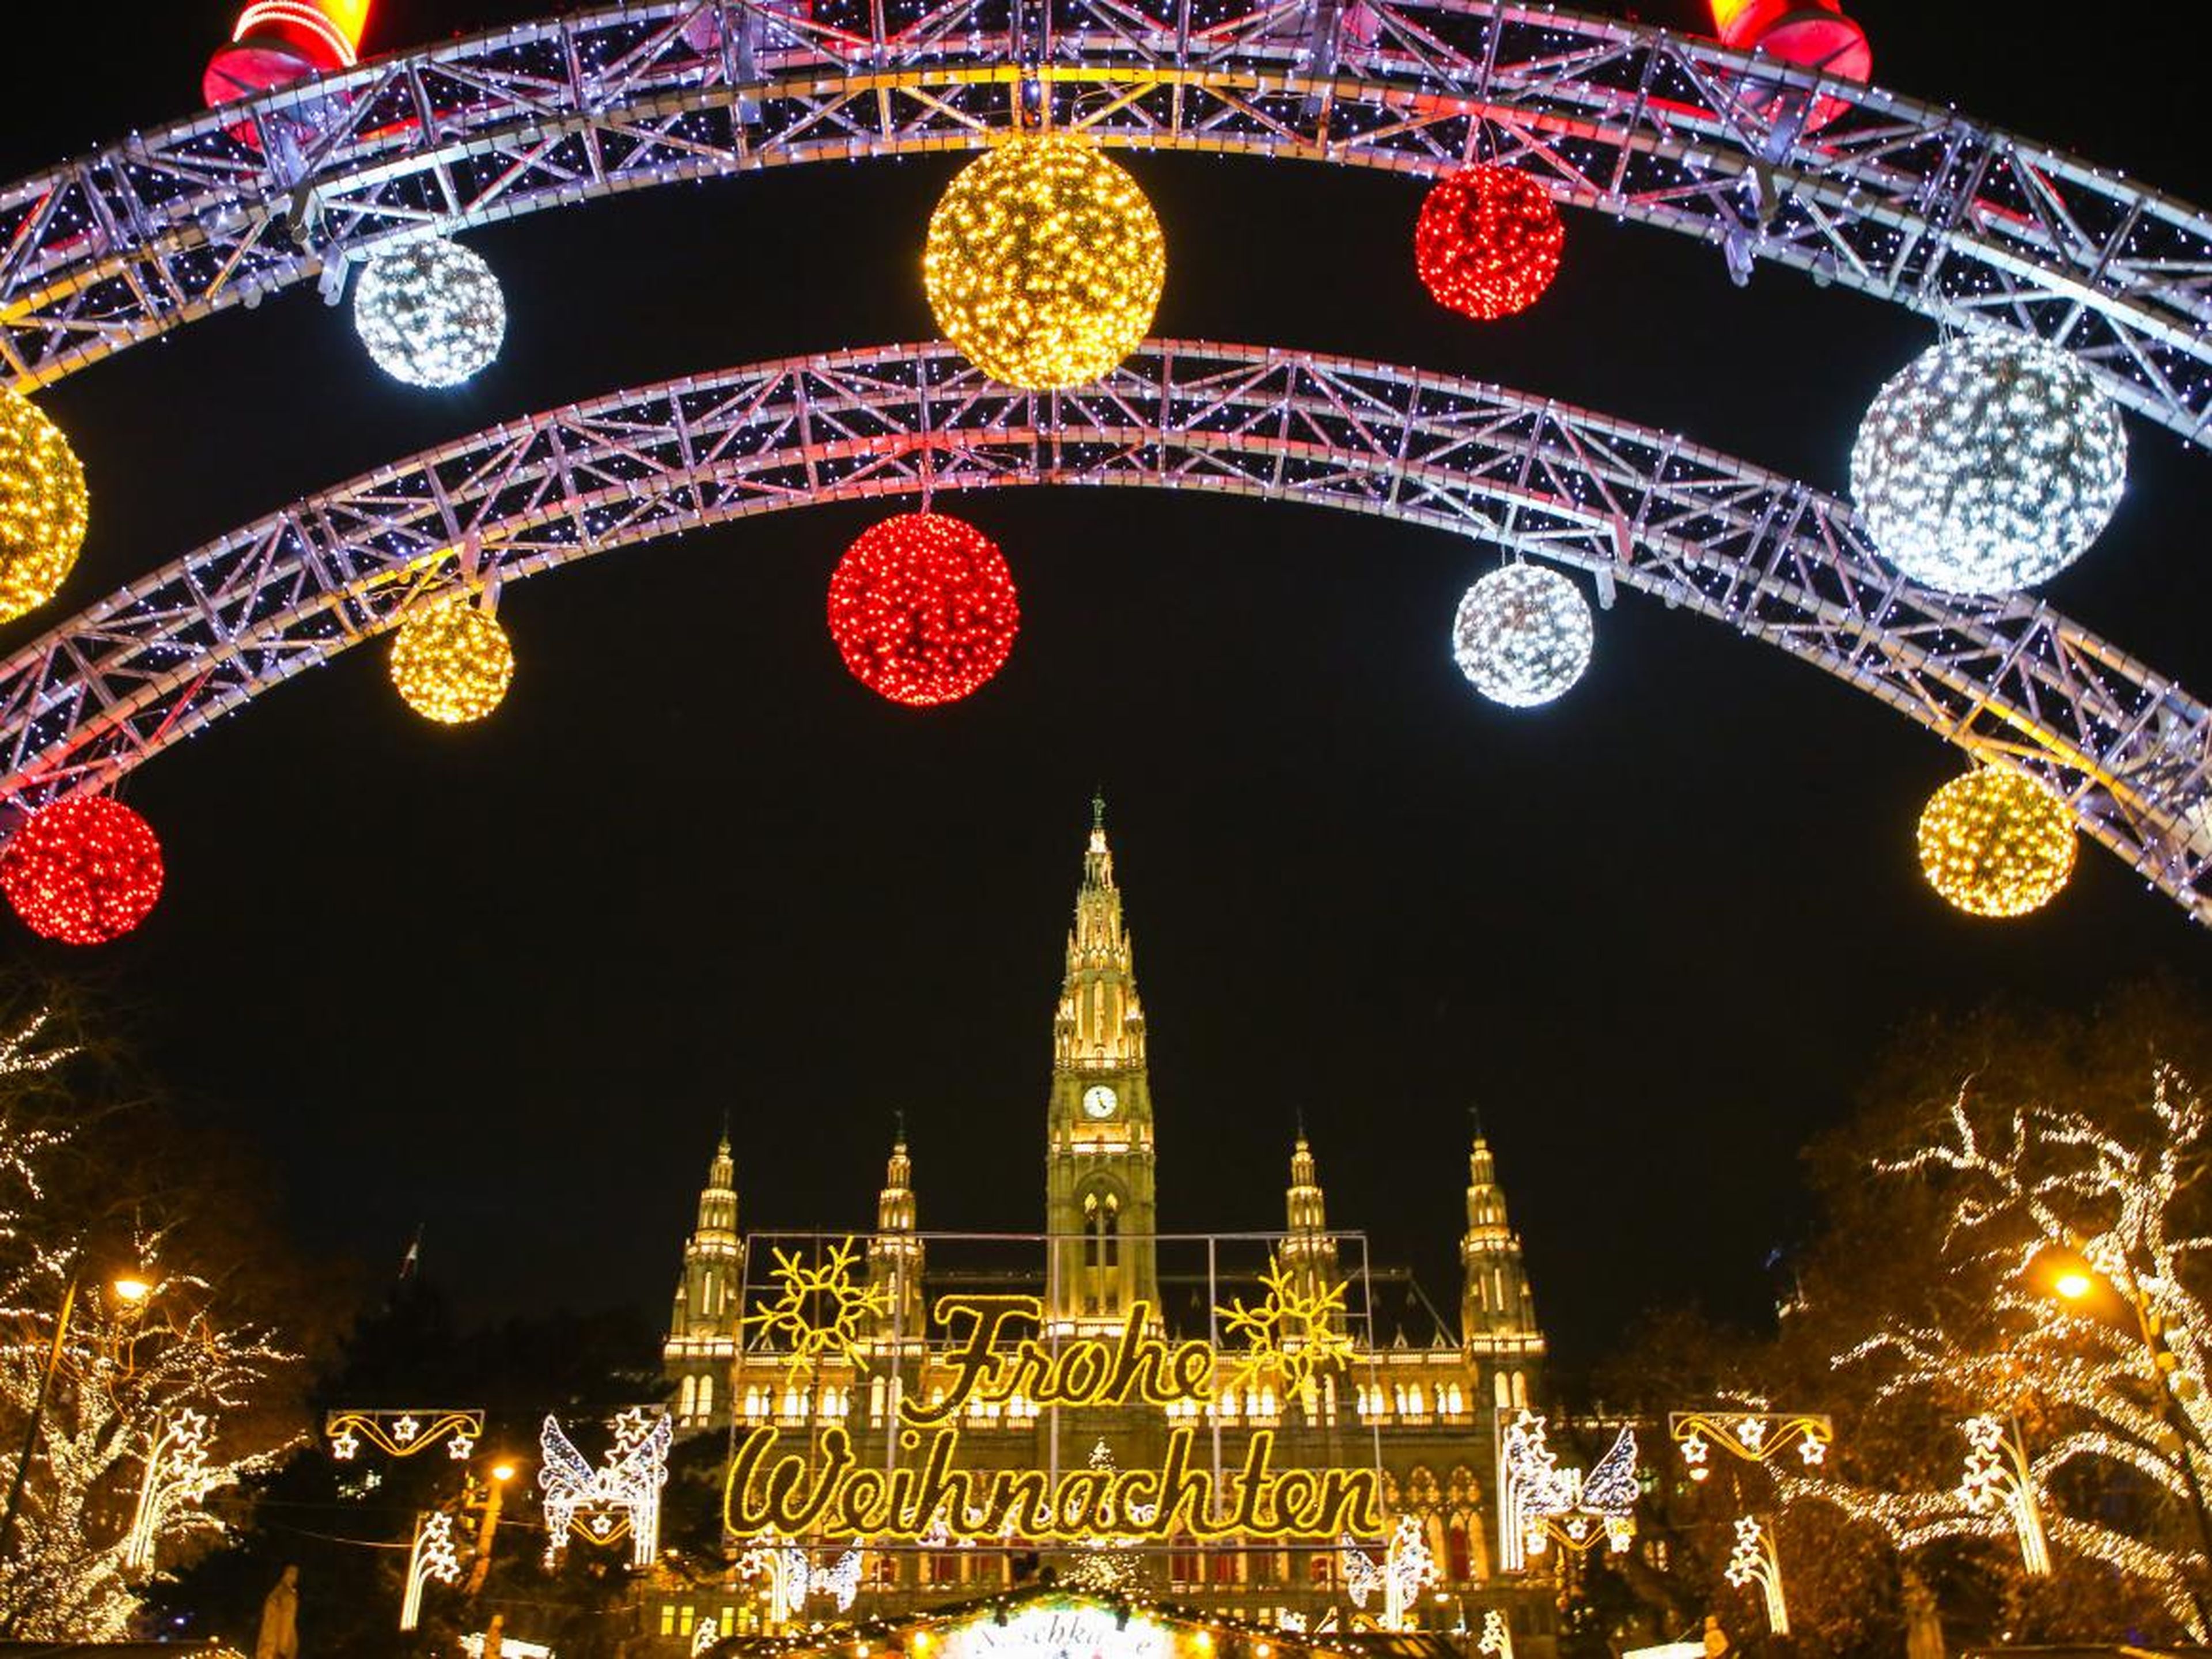 Decoraciones navideñas y mercado navideño tradicional frente al Ayuntamiento de Viena, Austria.